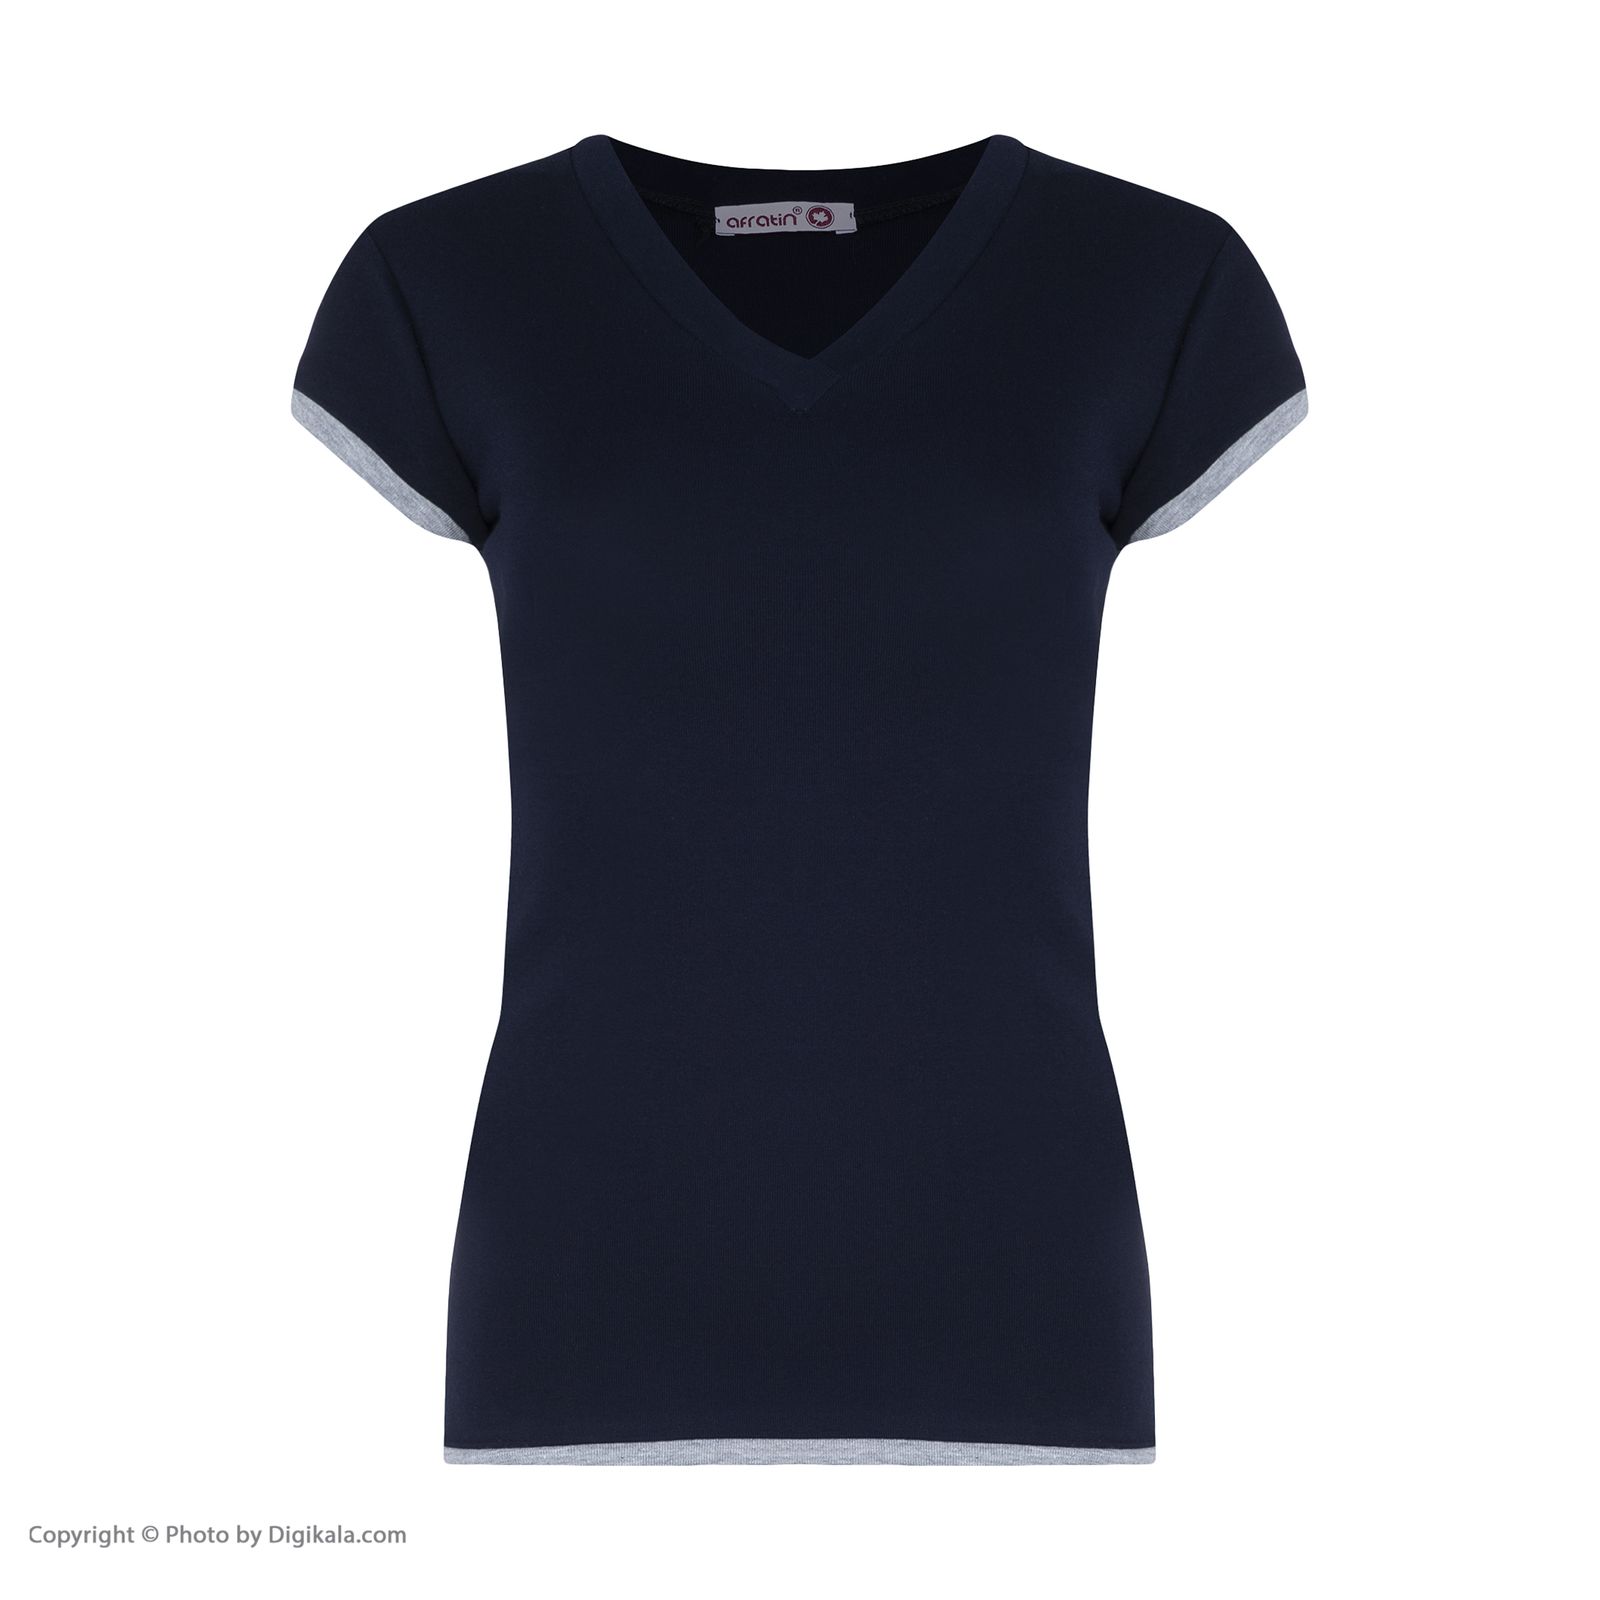 تی شرت زنانه افراتین کد 2556 رنگ سرمه ای -  - 2